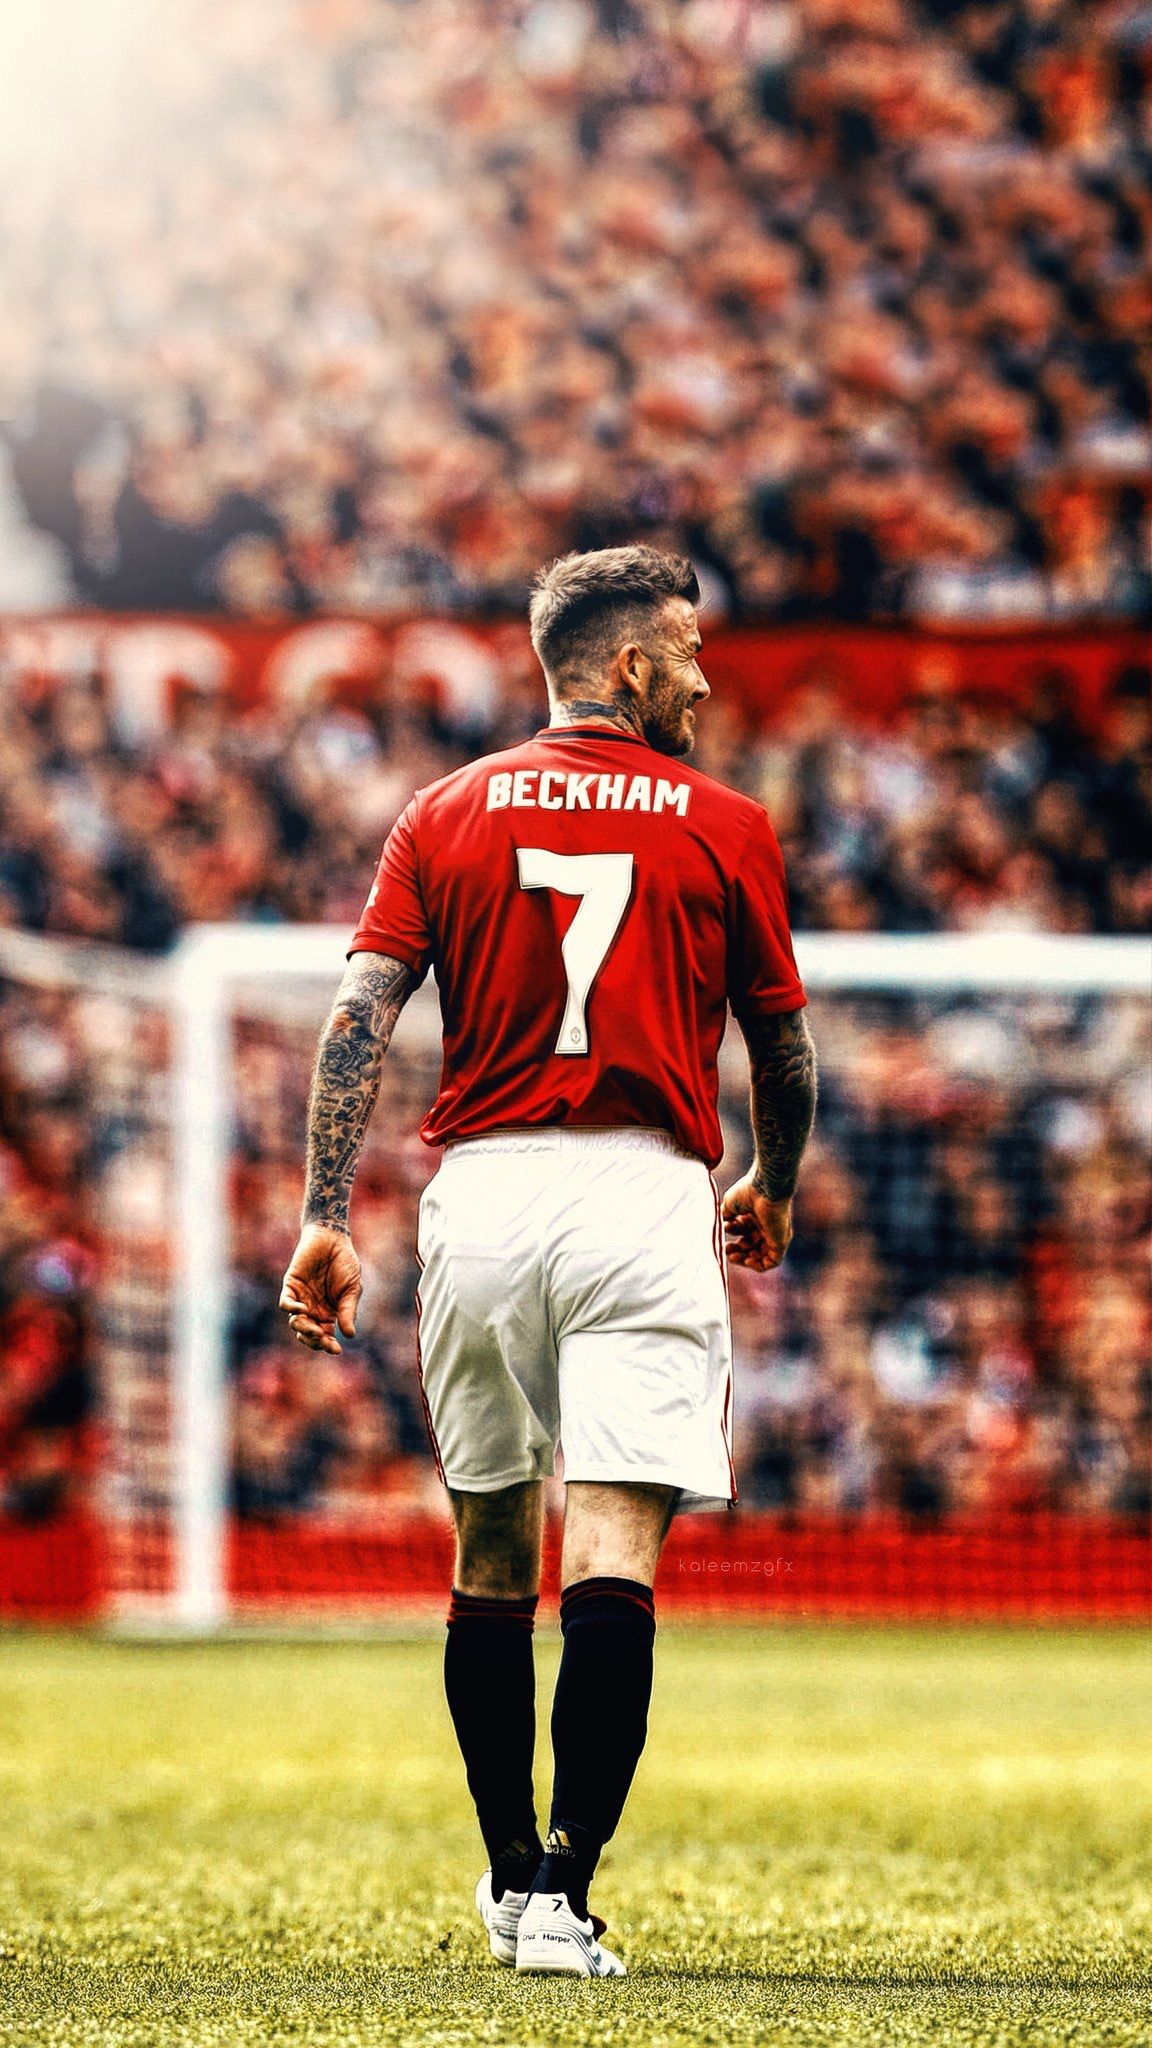 Beckham Manchester United 2019 , HD Wallpaper & Backgrounds